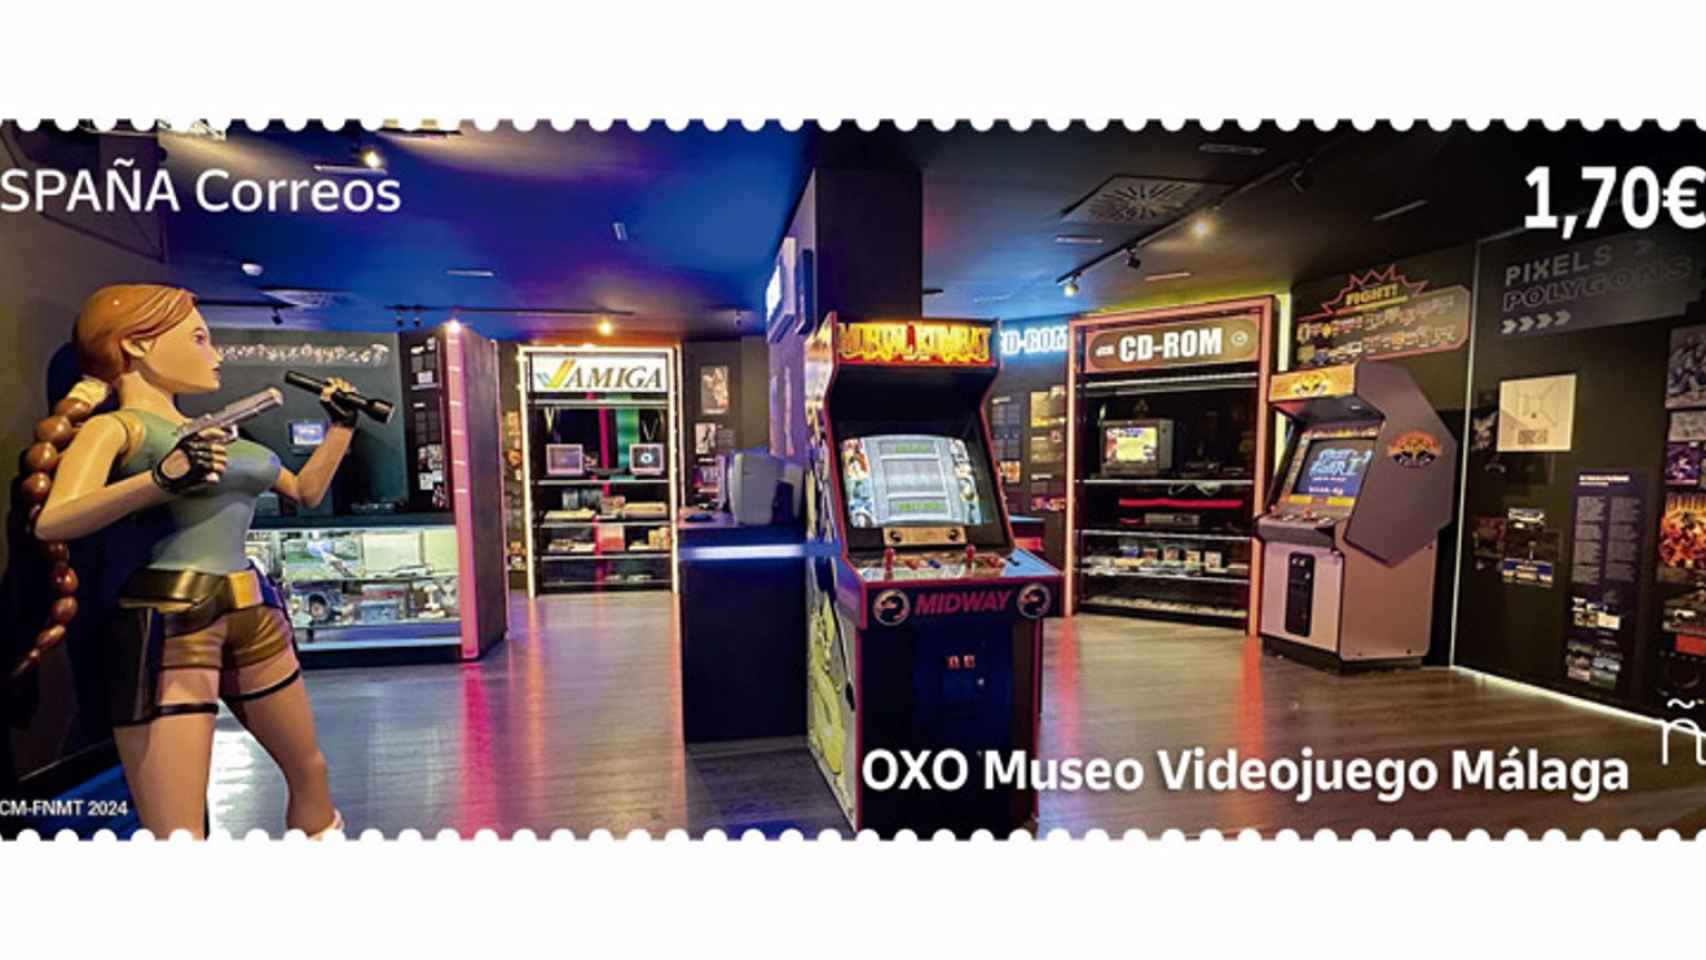 Imagen de sello dedicado a OXO, el Museo del Videojuego de Málaga.